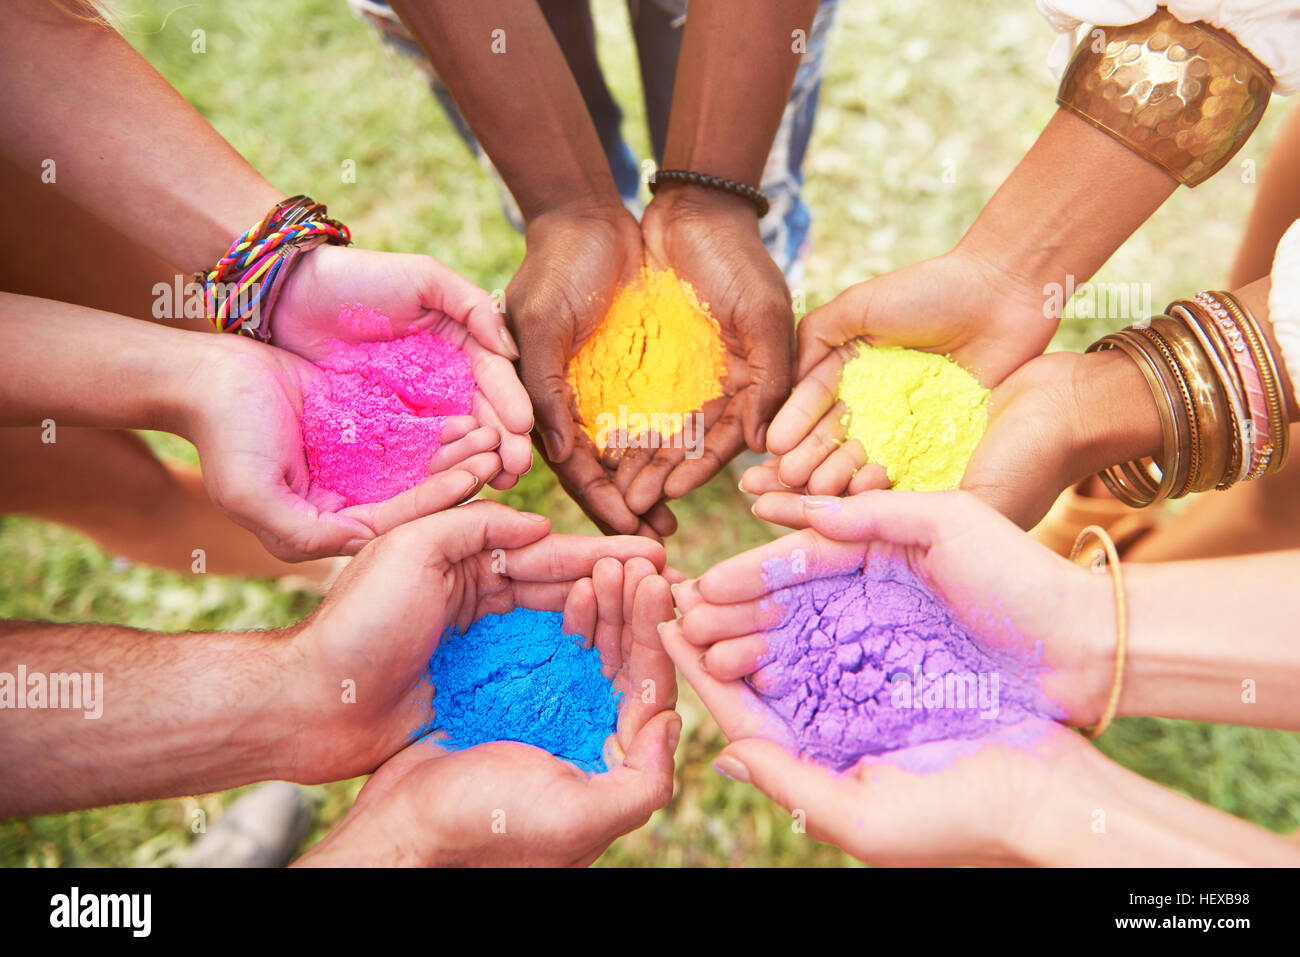 Gruppo di amici al festival, tenendo colorati di vernice in polvere in mani a tazza, close-up Foto Stock